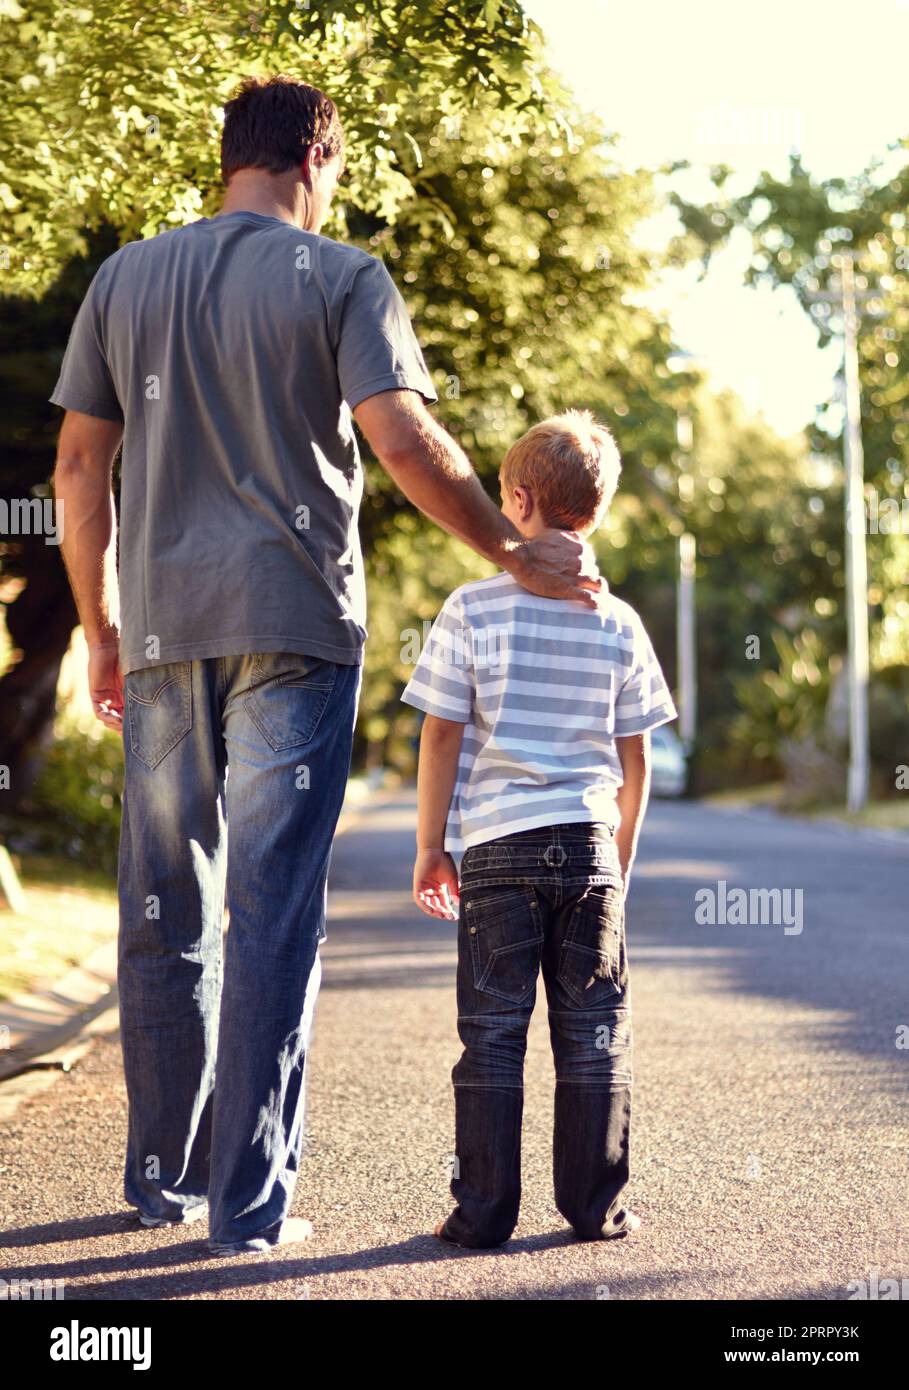 Passeggiando in periferia. Ripresa da dietro di un padre e un figlio che camminano per la strada insieme. Foto Stock